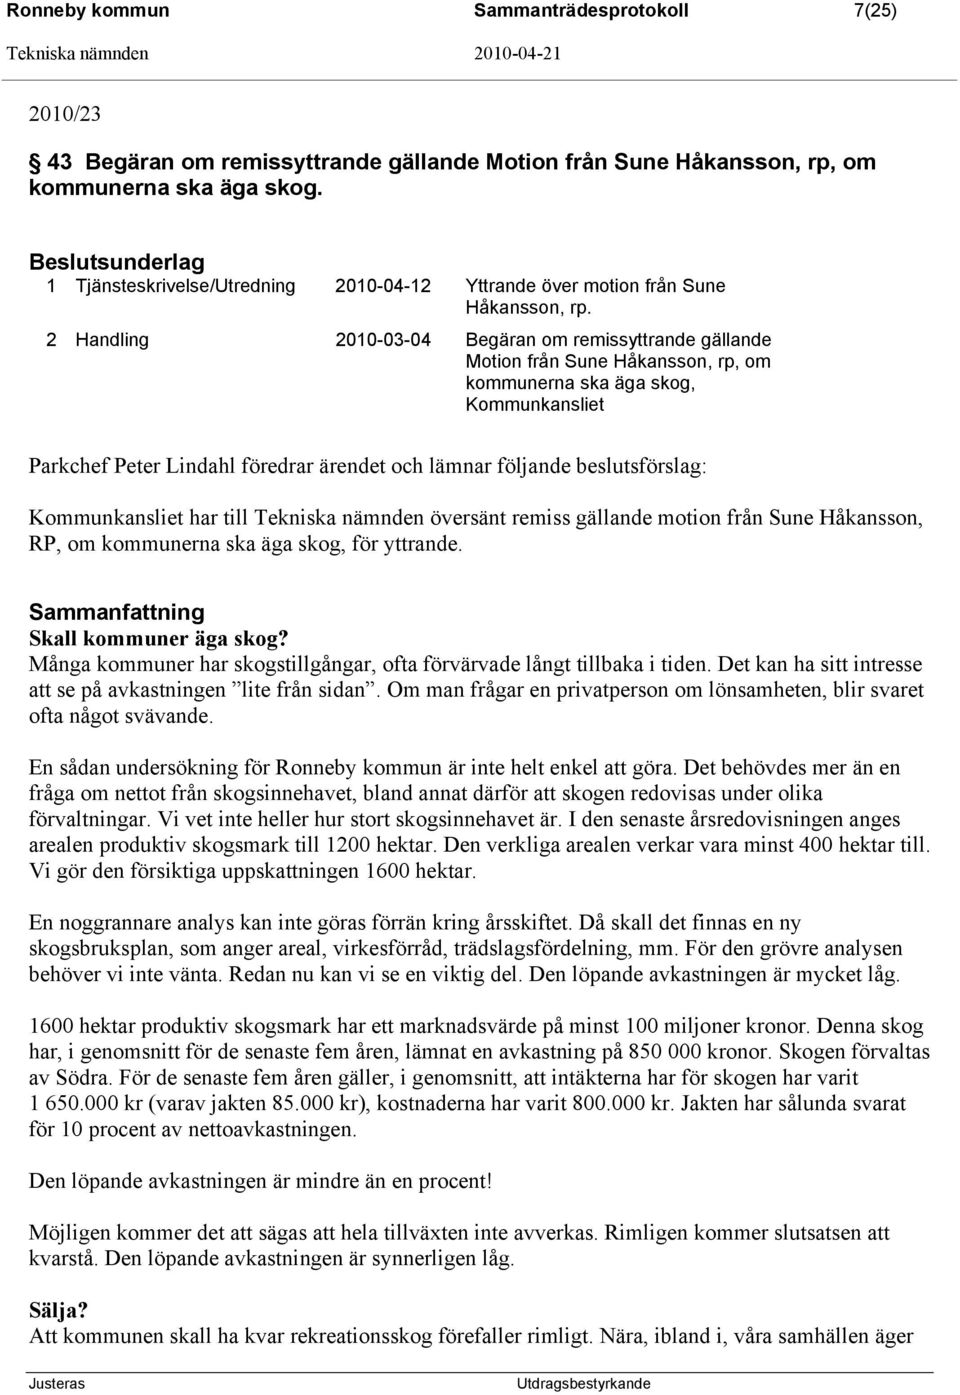 2 Handling 2010-03-04 Begäran om remissyttrande gällande Motion från Sune Håkansson, rp, om kommunerna ska äga skog, Kommunkansliet Parkchef Peter Lindahl föredrar ärendet och lämnar följande